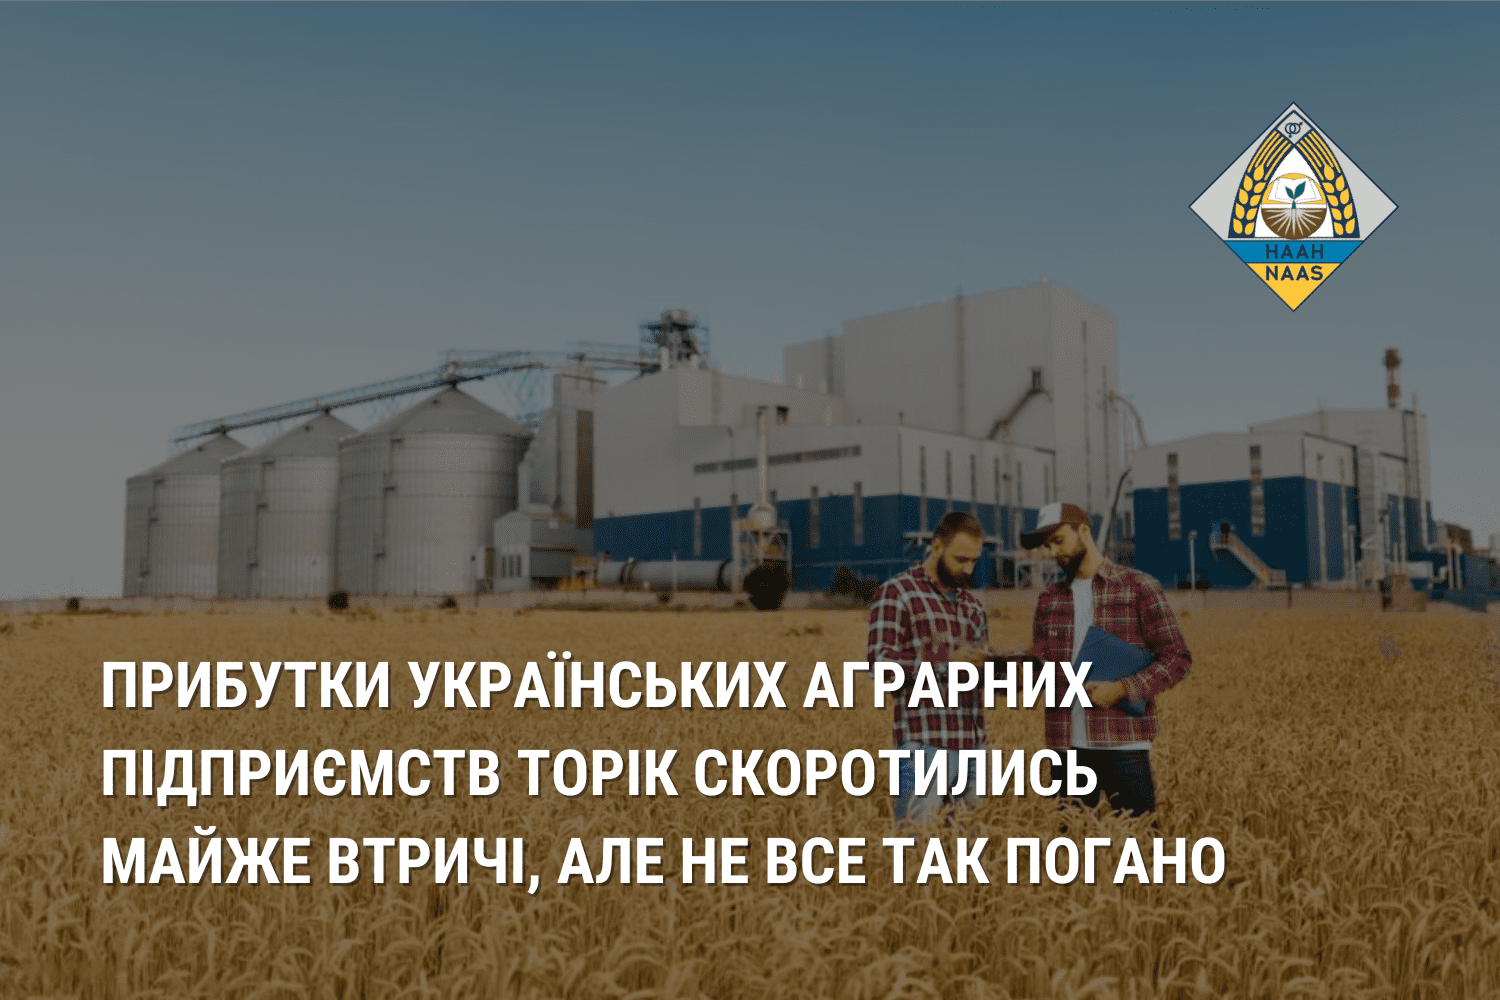 Прибутки українських аграрних підприємств торік скоротились майже втричі, але не все так погано